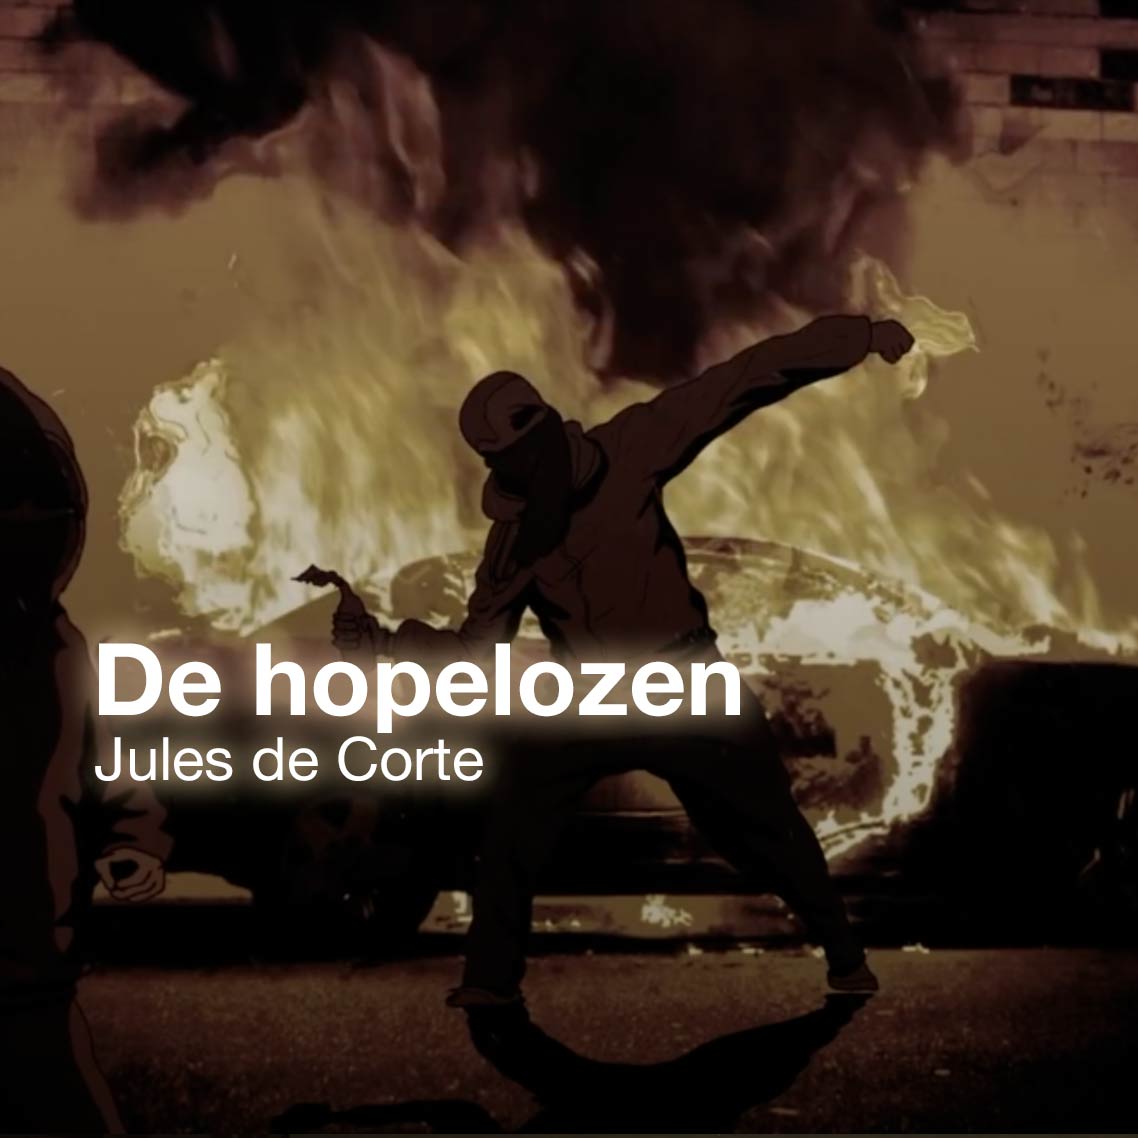 De hopelozen | music video 